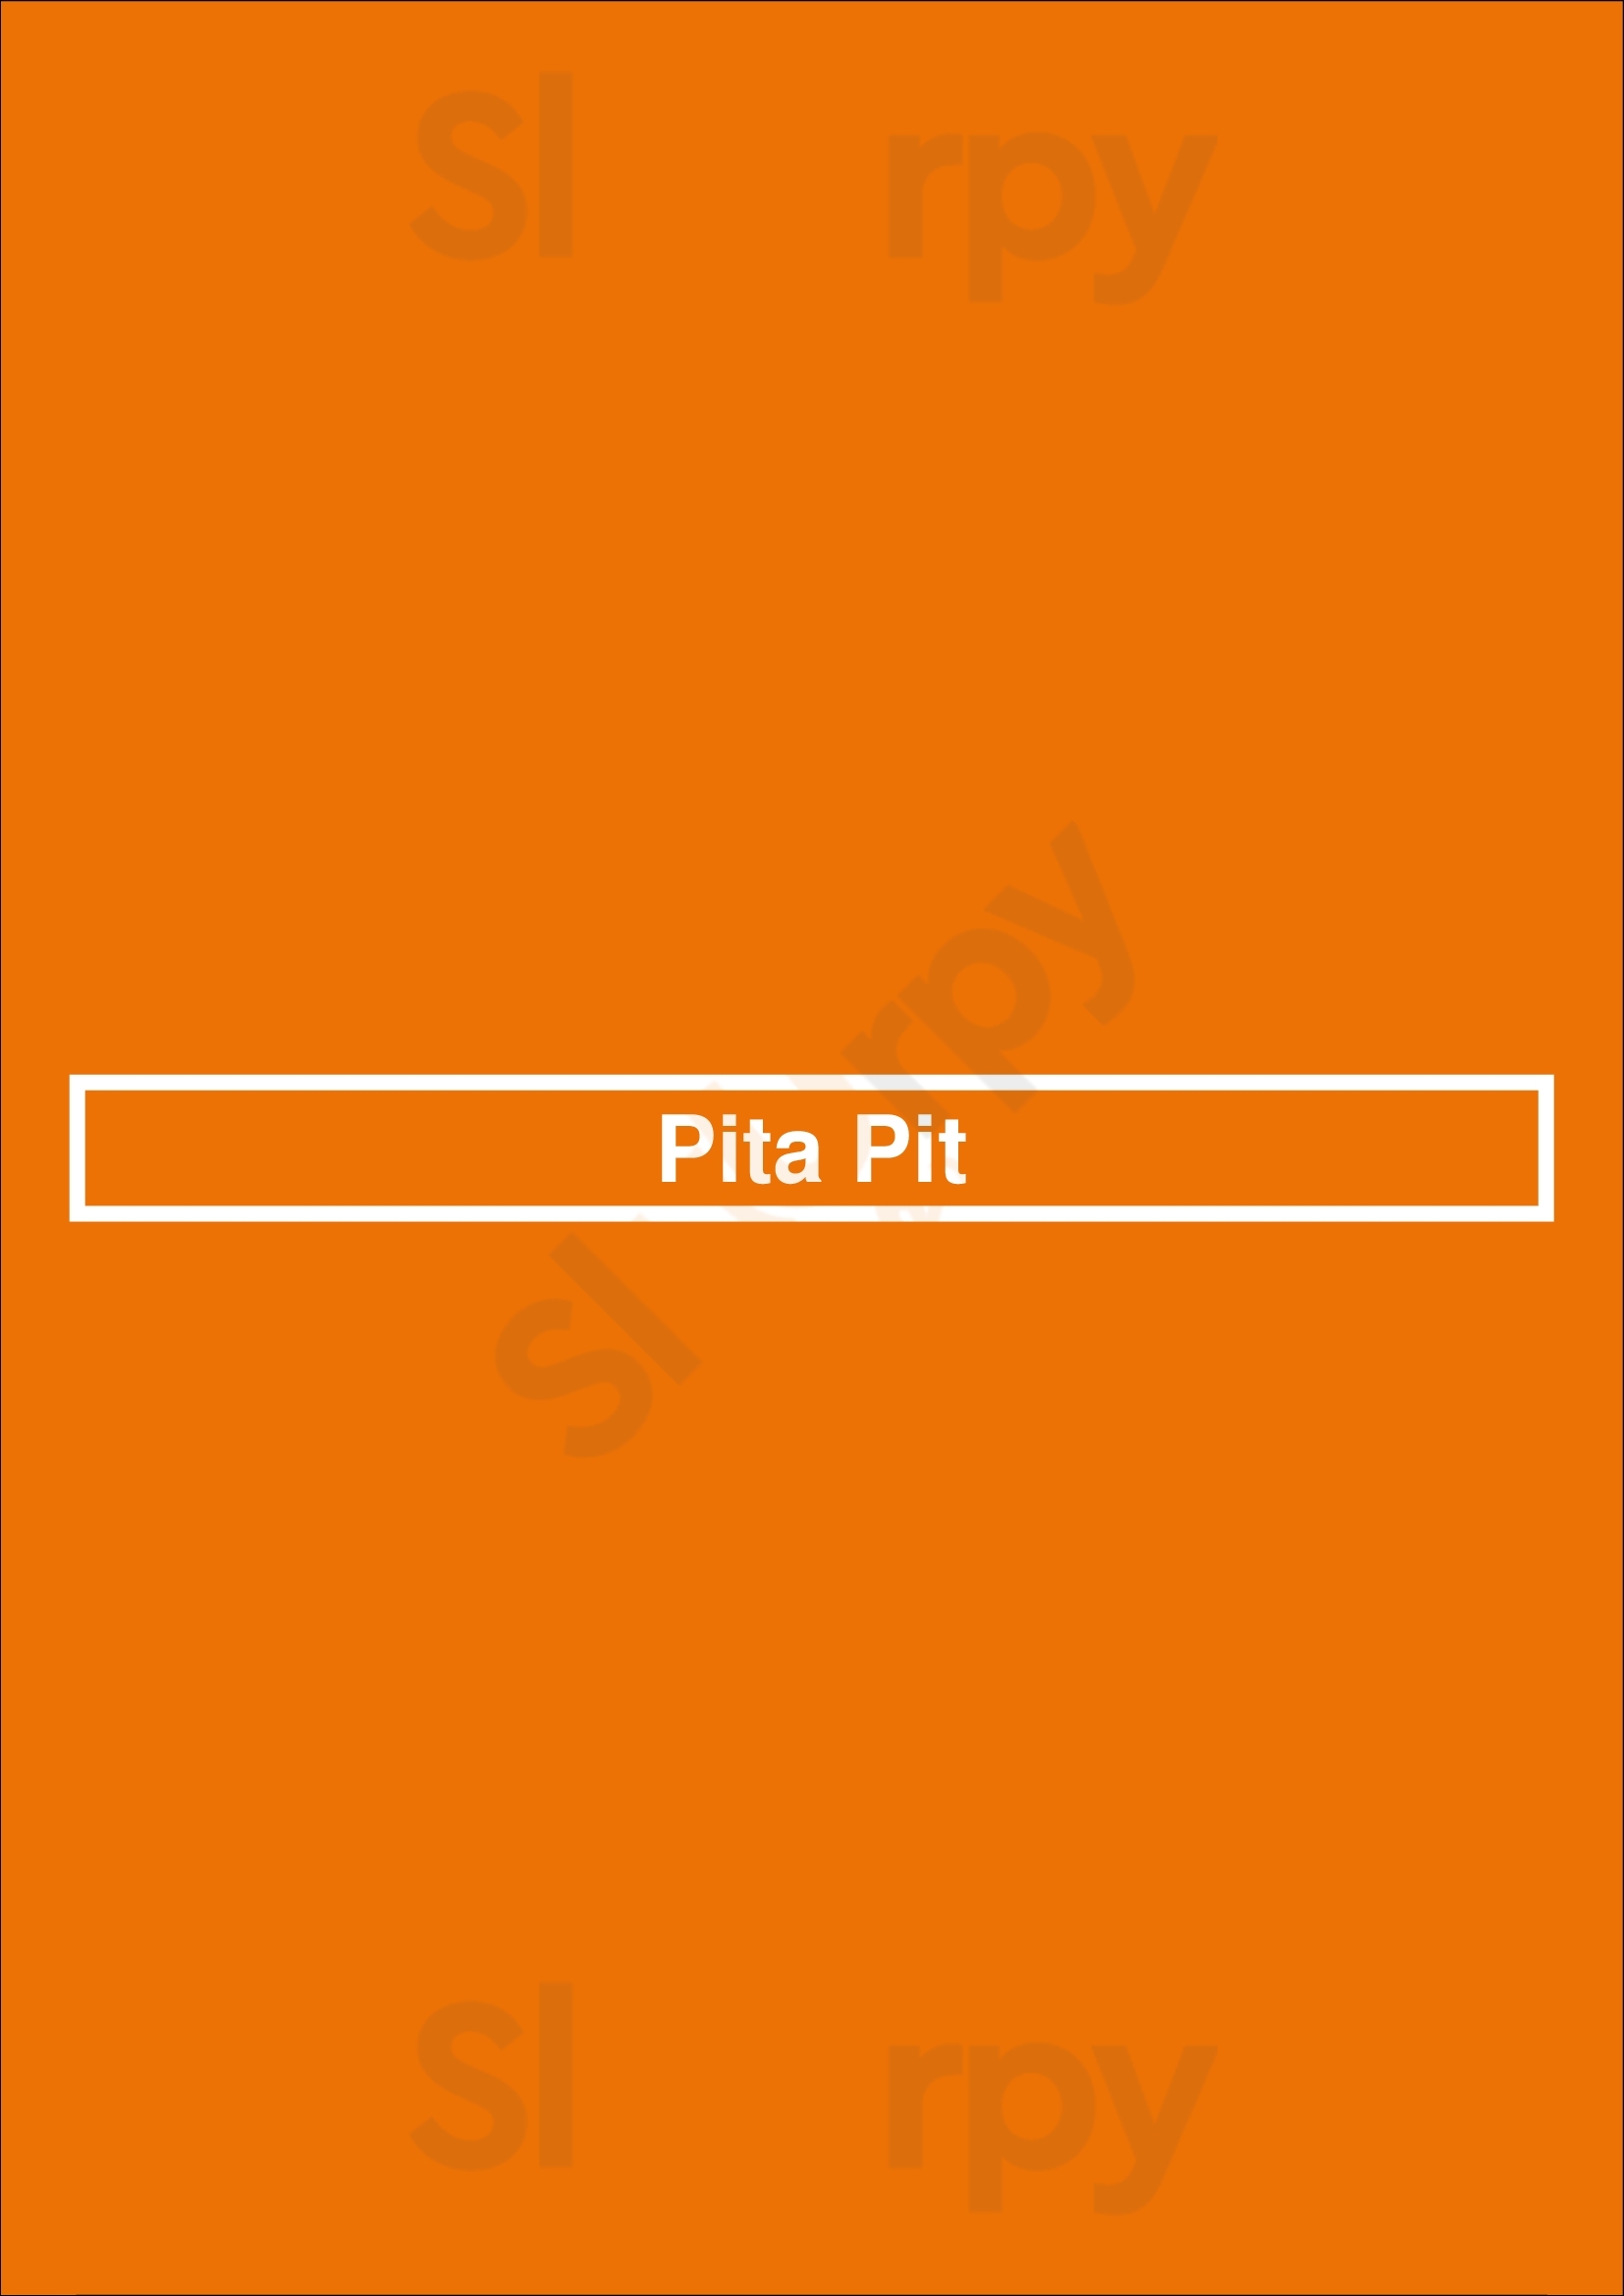 Pita Pit Guelph Menu - 1